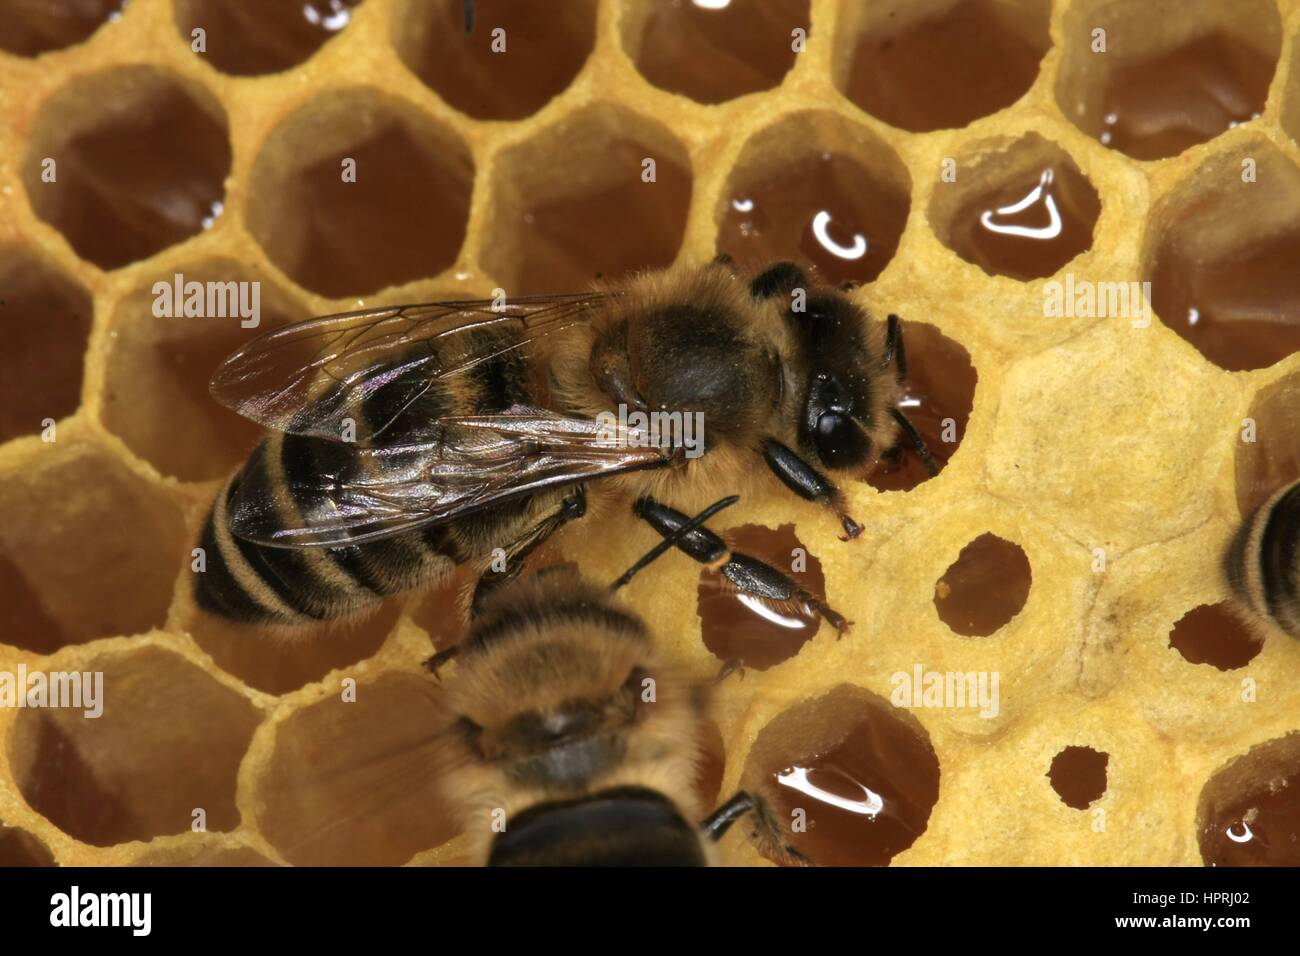 El néctar de las celdas llenas de un panal de miel. El néctar es recogido por las abejas y se depositan en los panales y seguir procesando hasta la madurez. Sirve las abejas como alimento y el apicultor como un producto de la cosecha. En Turingia, Alemania, Europa Fecha: 08 de mayo, 201 | uso en todo el mundo Foto de stock